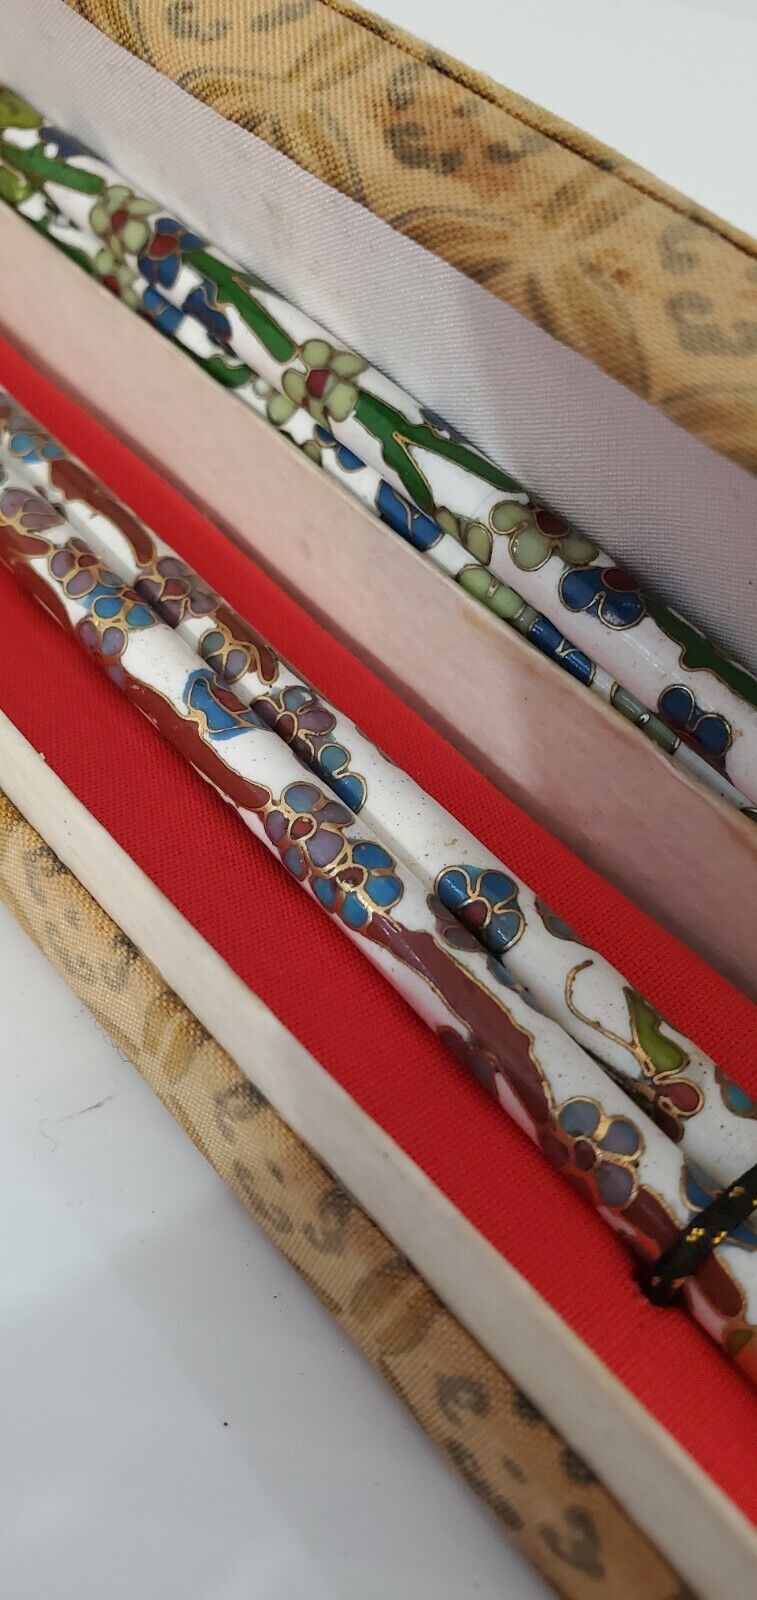 2 Vintage Cloisonne Enamel Blue Floral Pattern Chopsticks In Box Sets